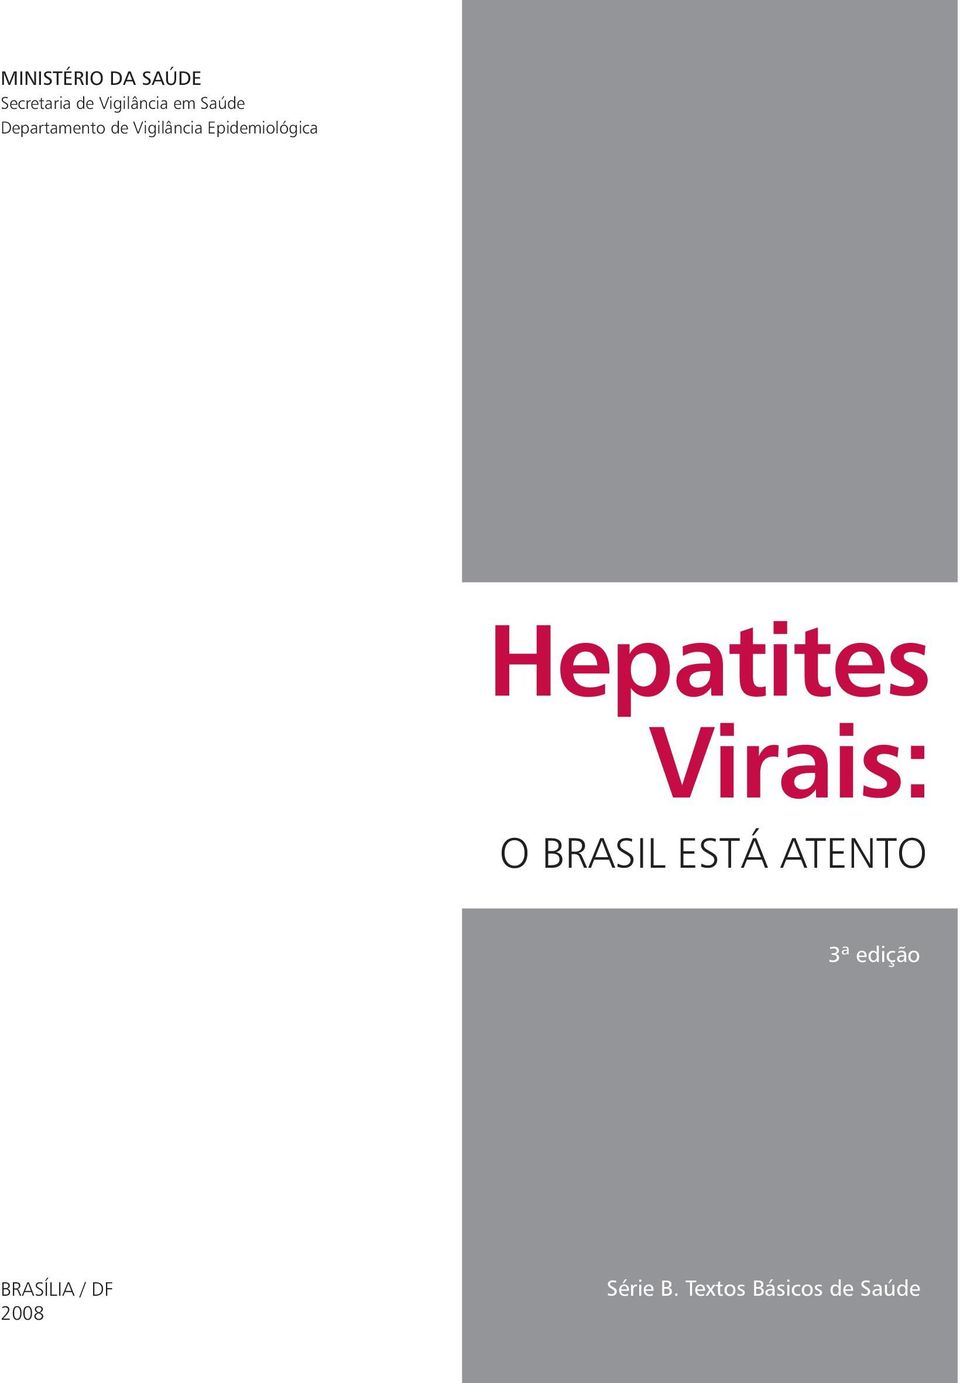 Hepatites Virais: O BRASIL ESTÁ ATENTO 3ª edição